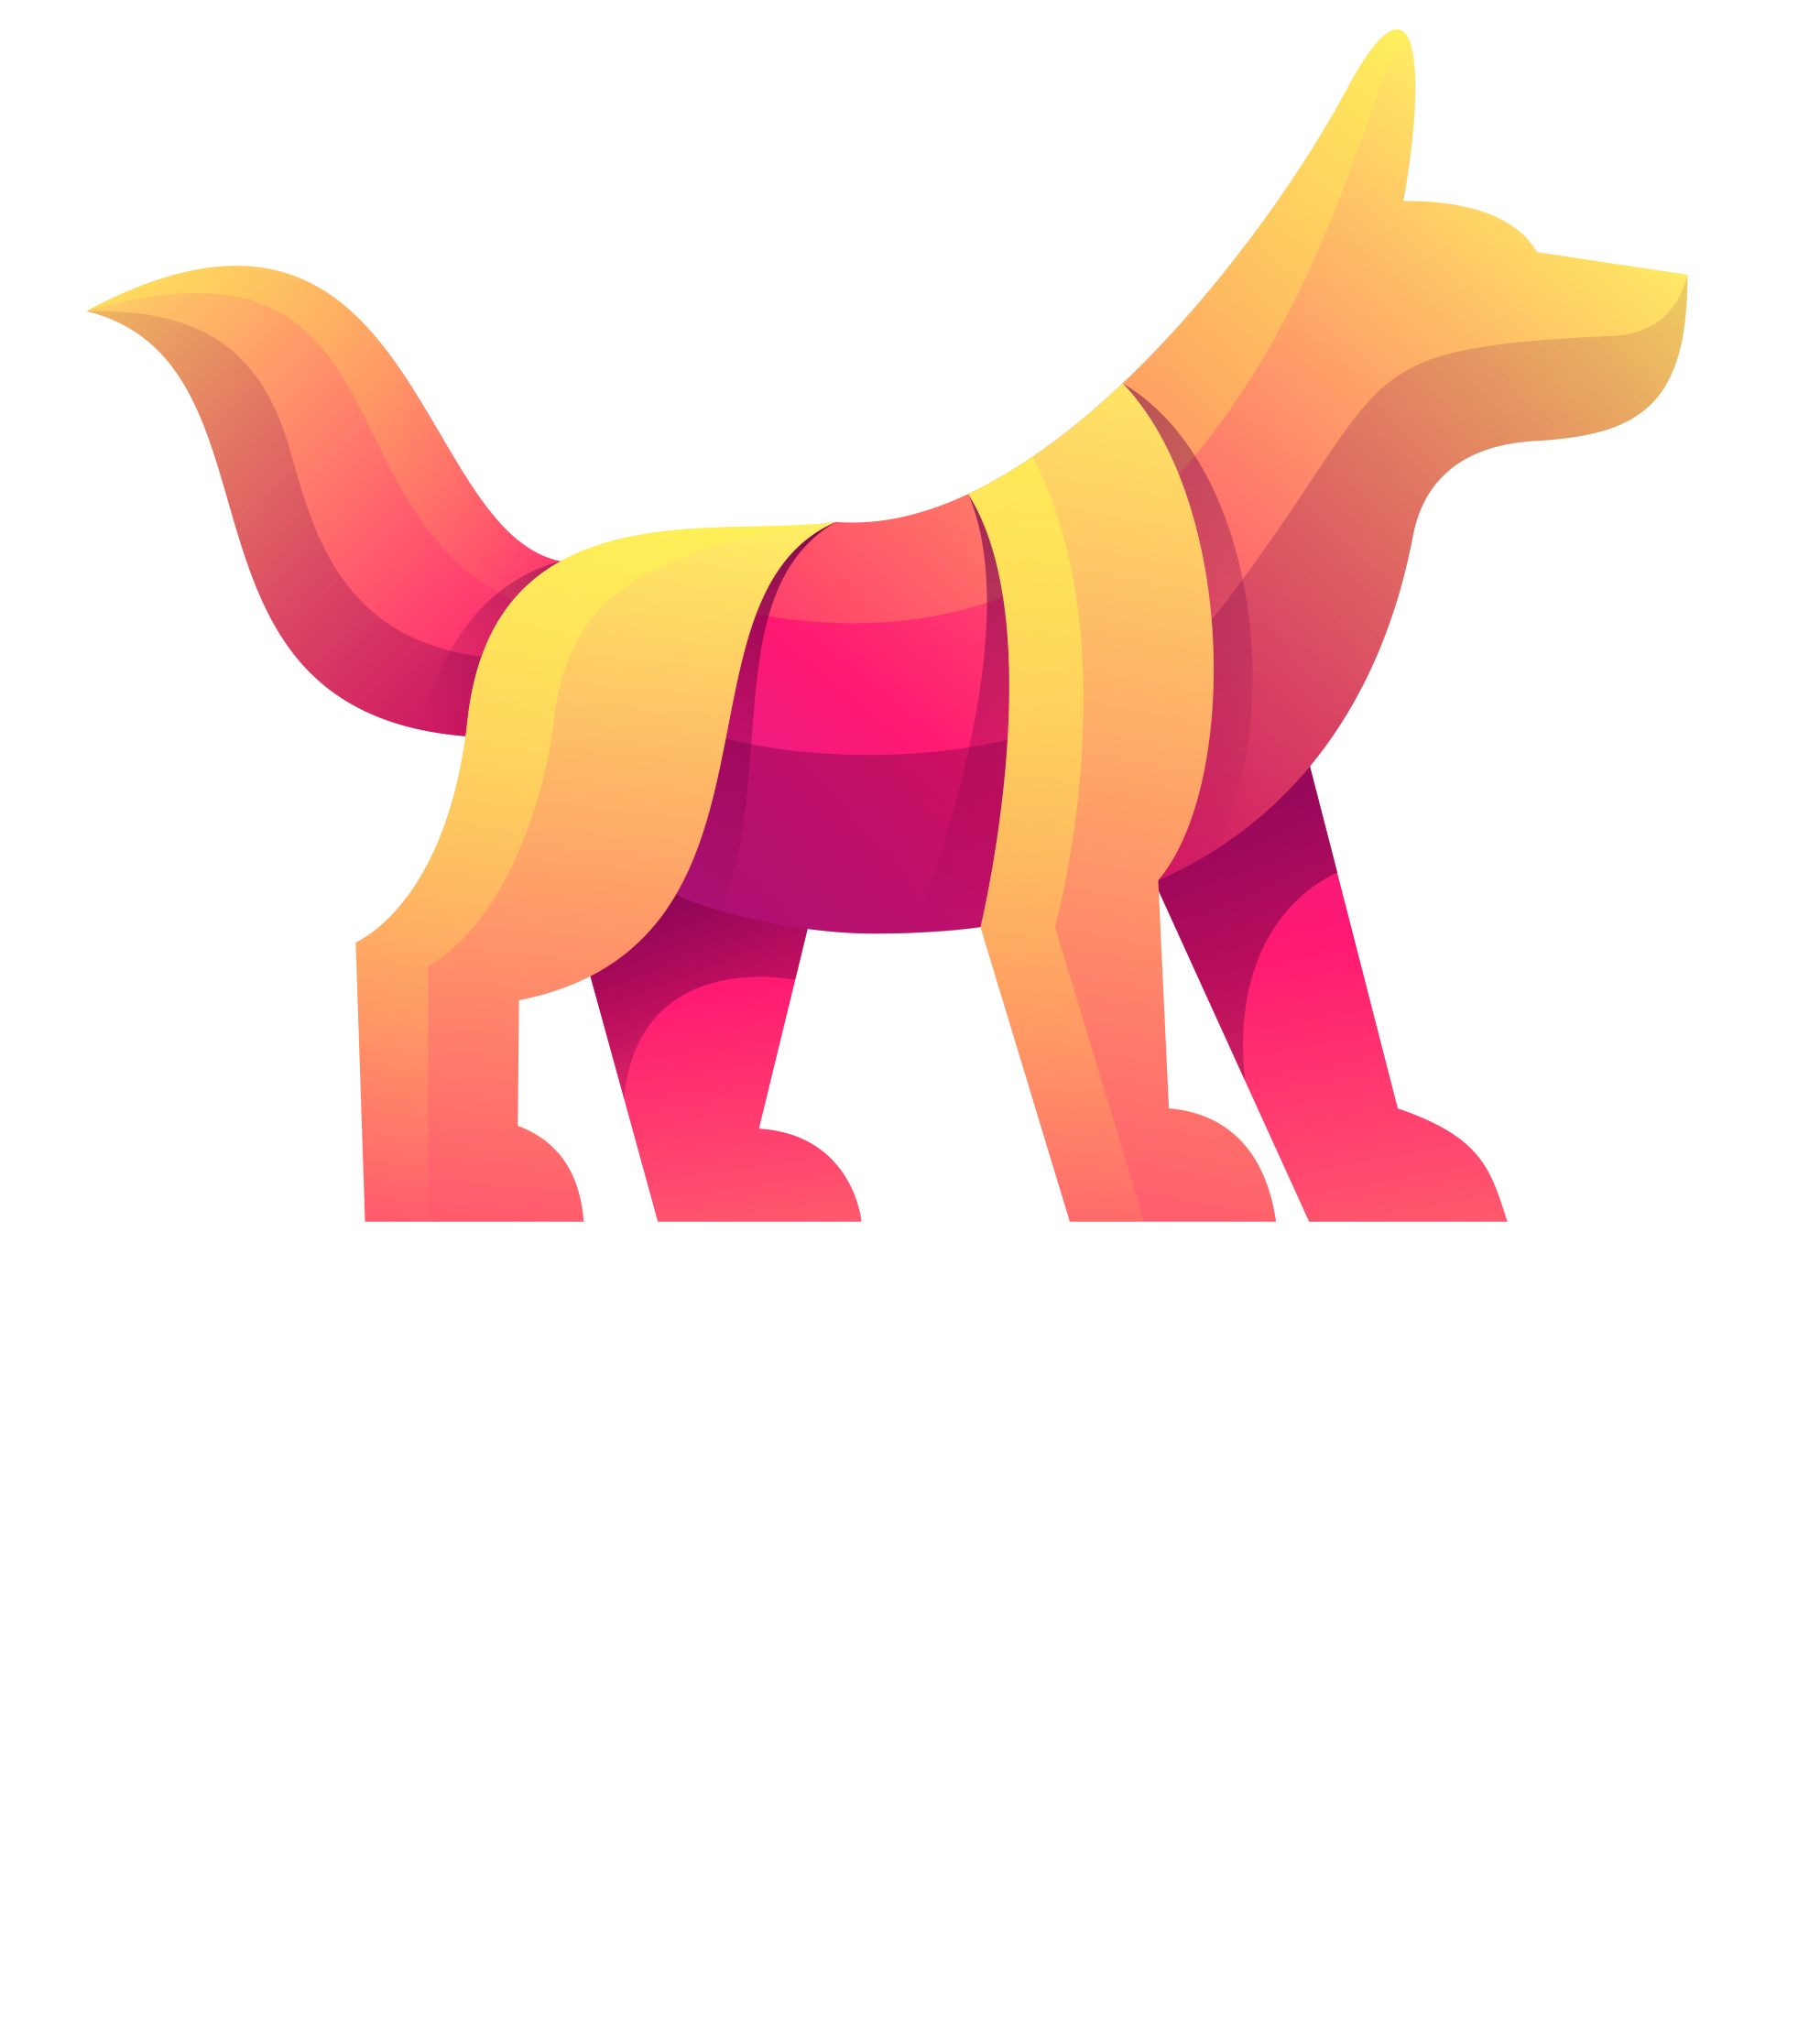 Steve Pollock